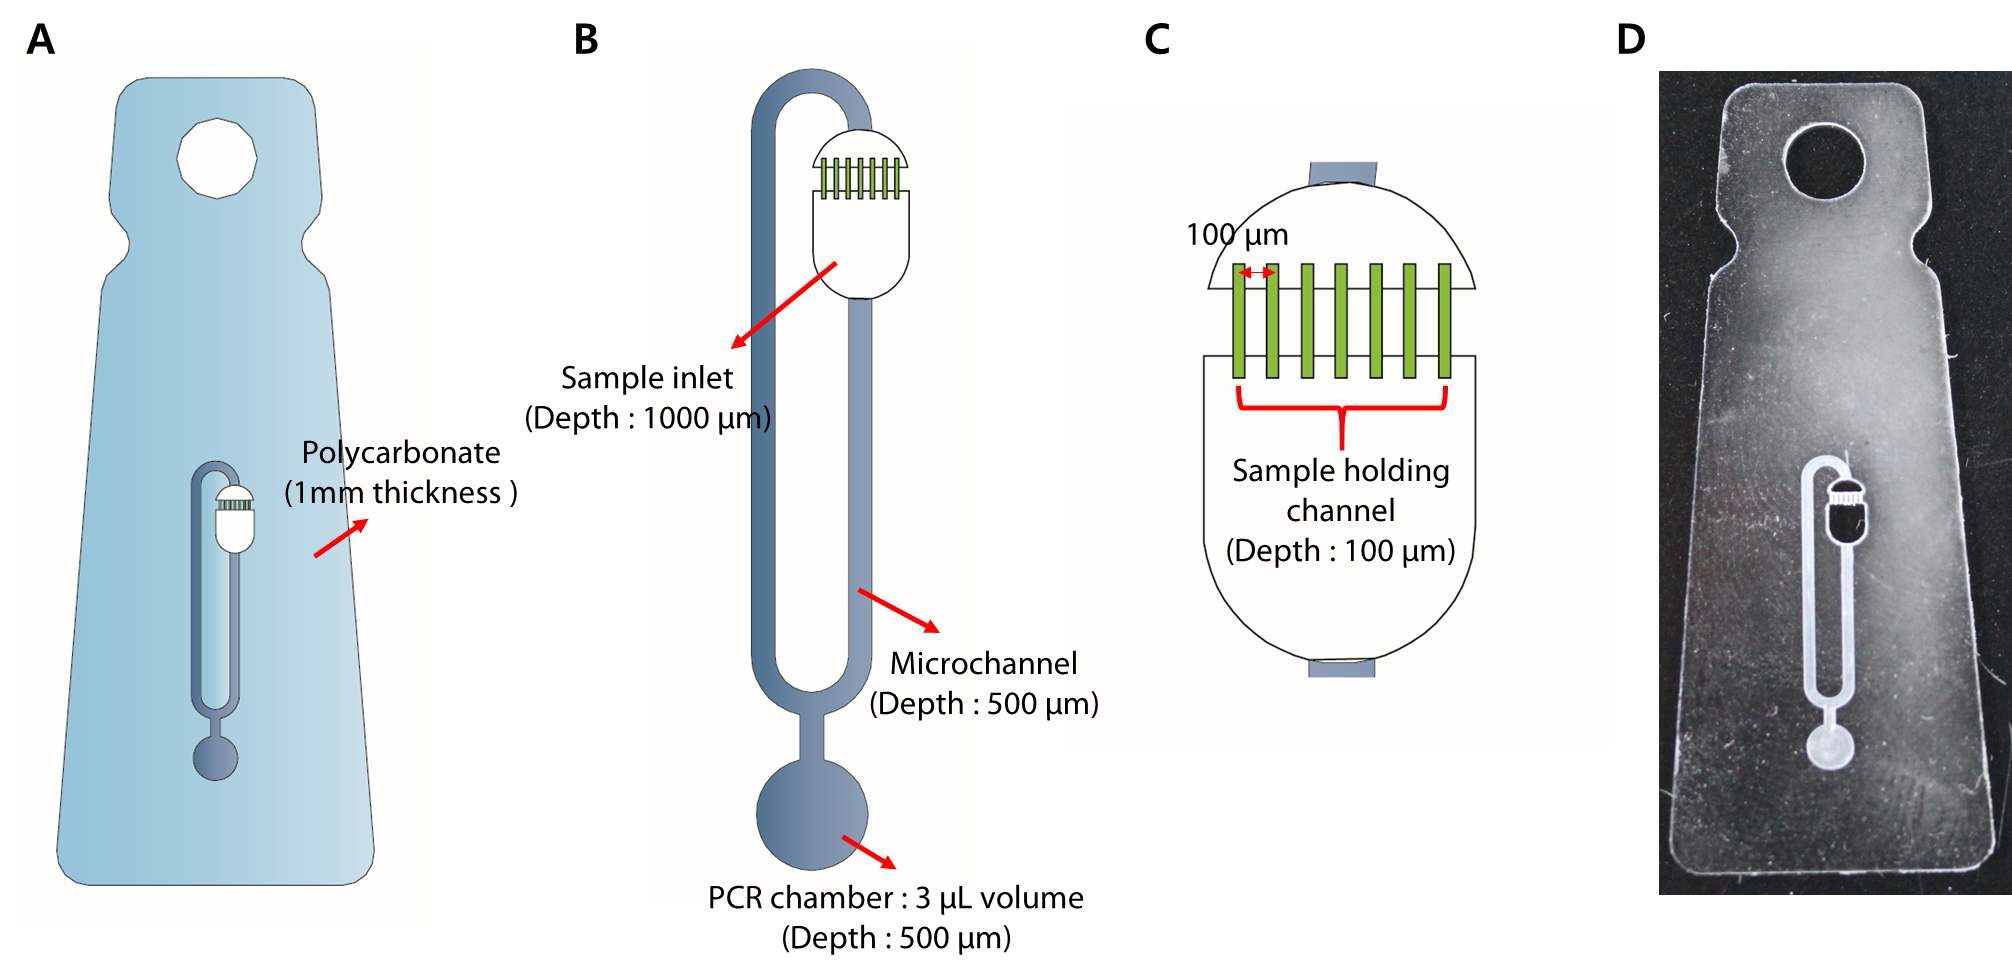 그림 43. A. PCR 칩 개략도 B. PCR 수행을 위한 단위 유닛 C. 시료 주입 챔버 및 홀딩 채널 D. PCR 칩 실제 이미지